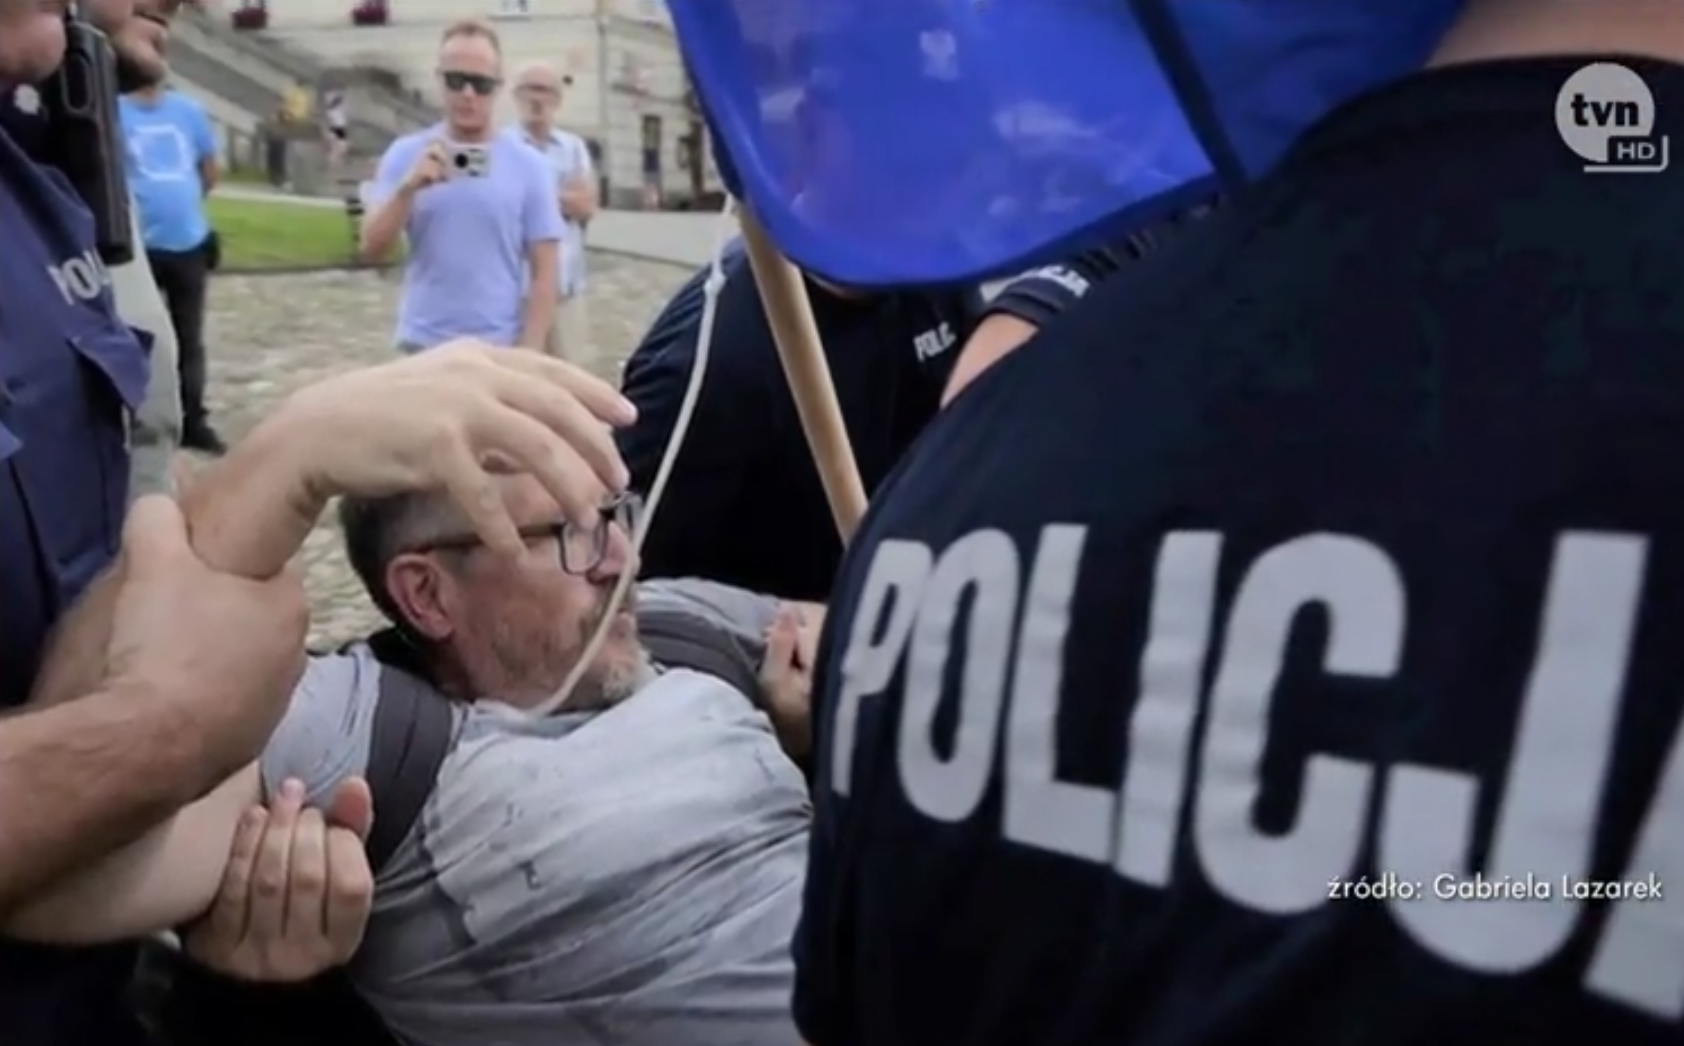 "Precz z polskim faszyzmem" - za te słowa został aresztowany - Zdjęcie główne